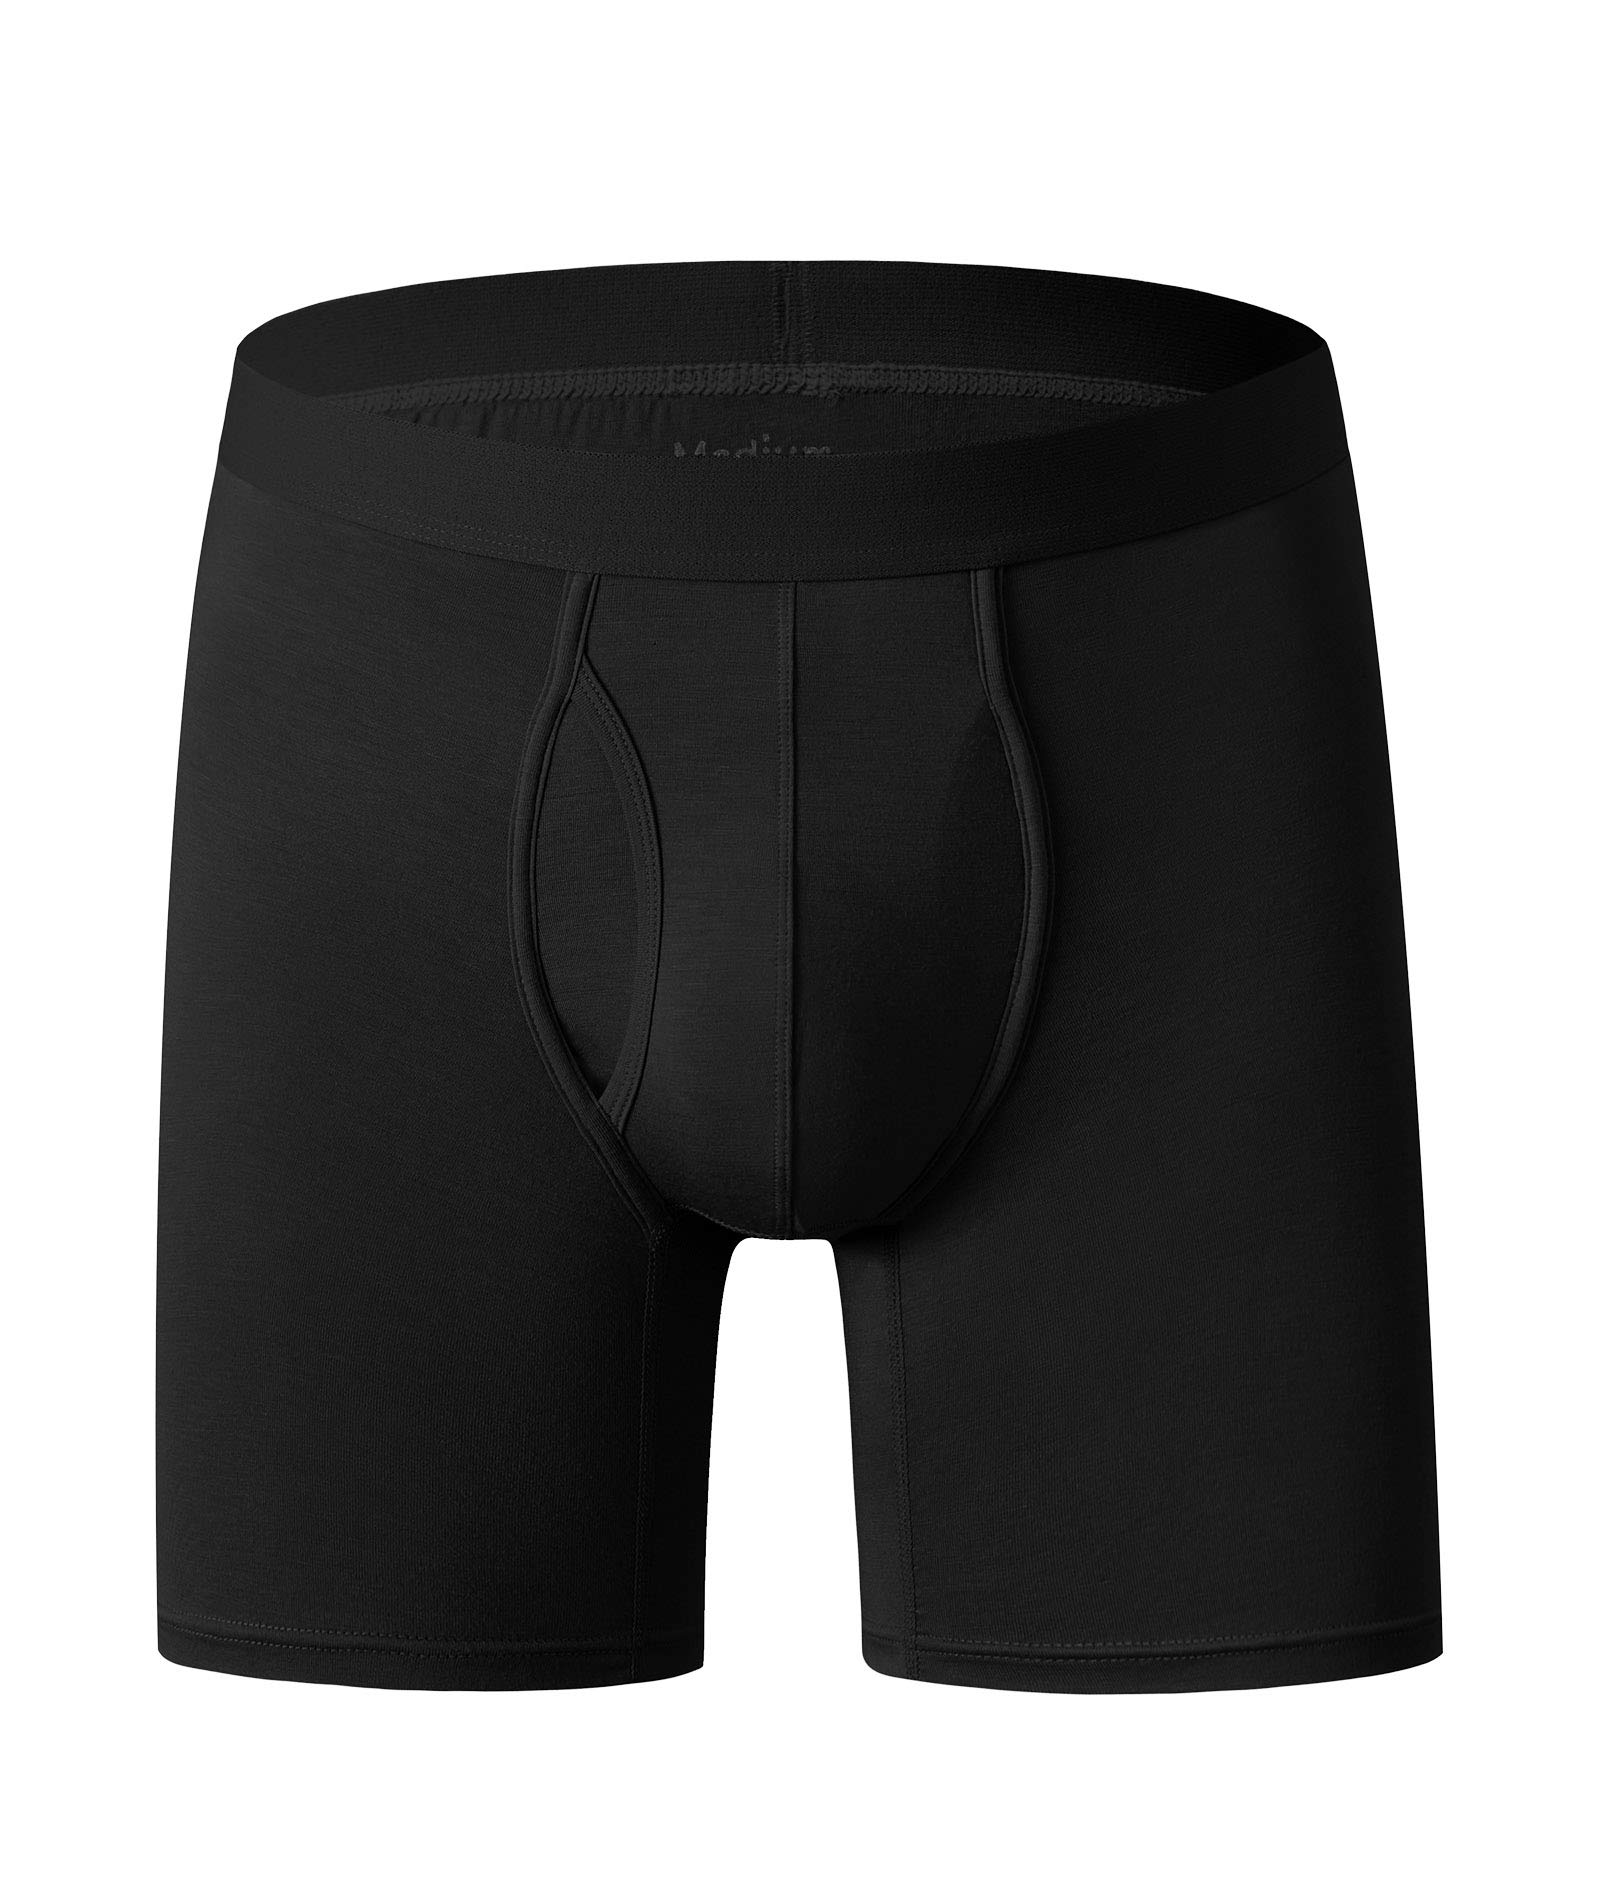 men's underwear (7)